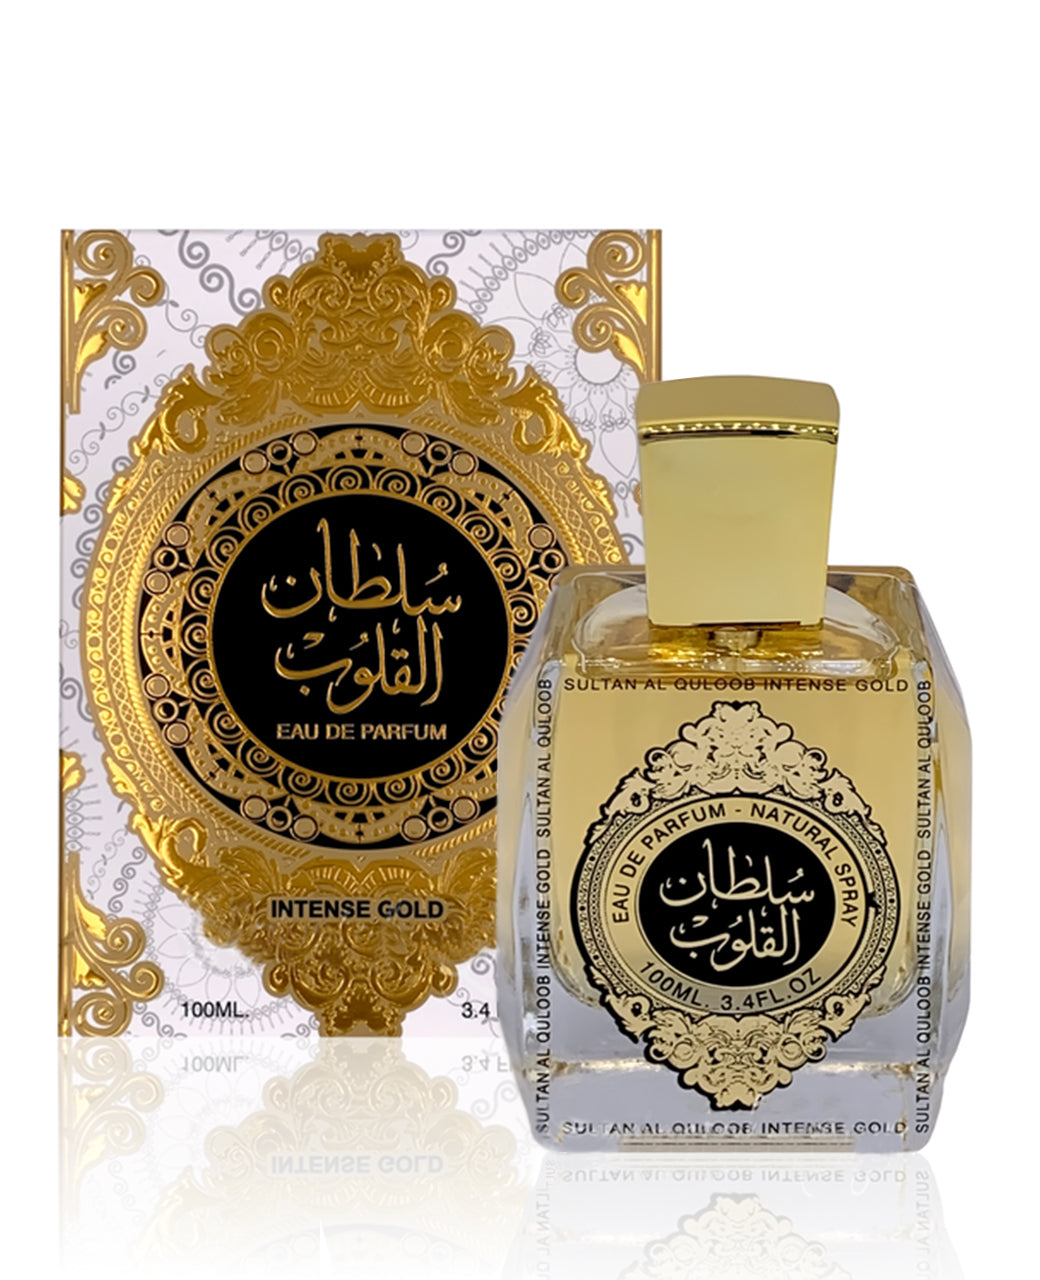 Sultan Al Quloob Intense Gold EDP (100ml) spray perfume by Ard Al Zaafaran | Khan El Khalili